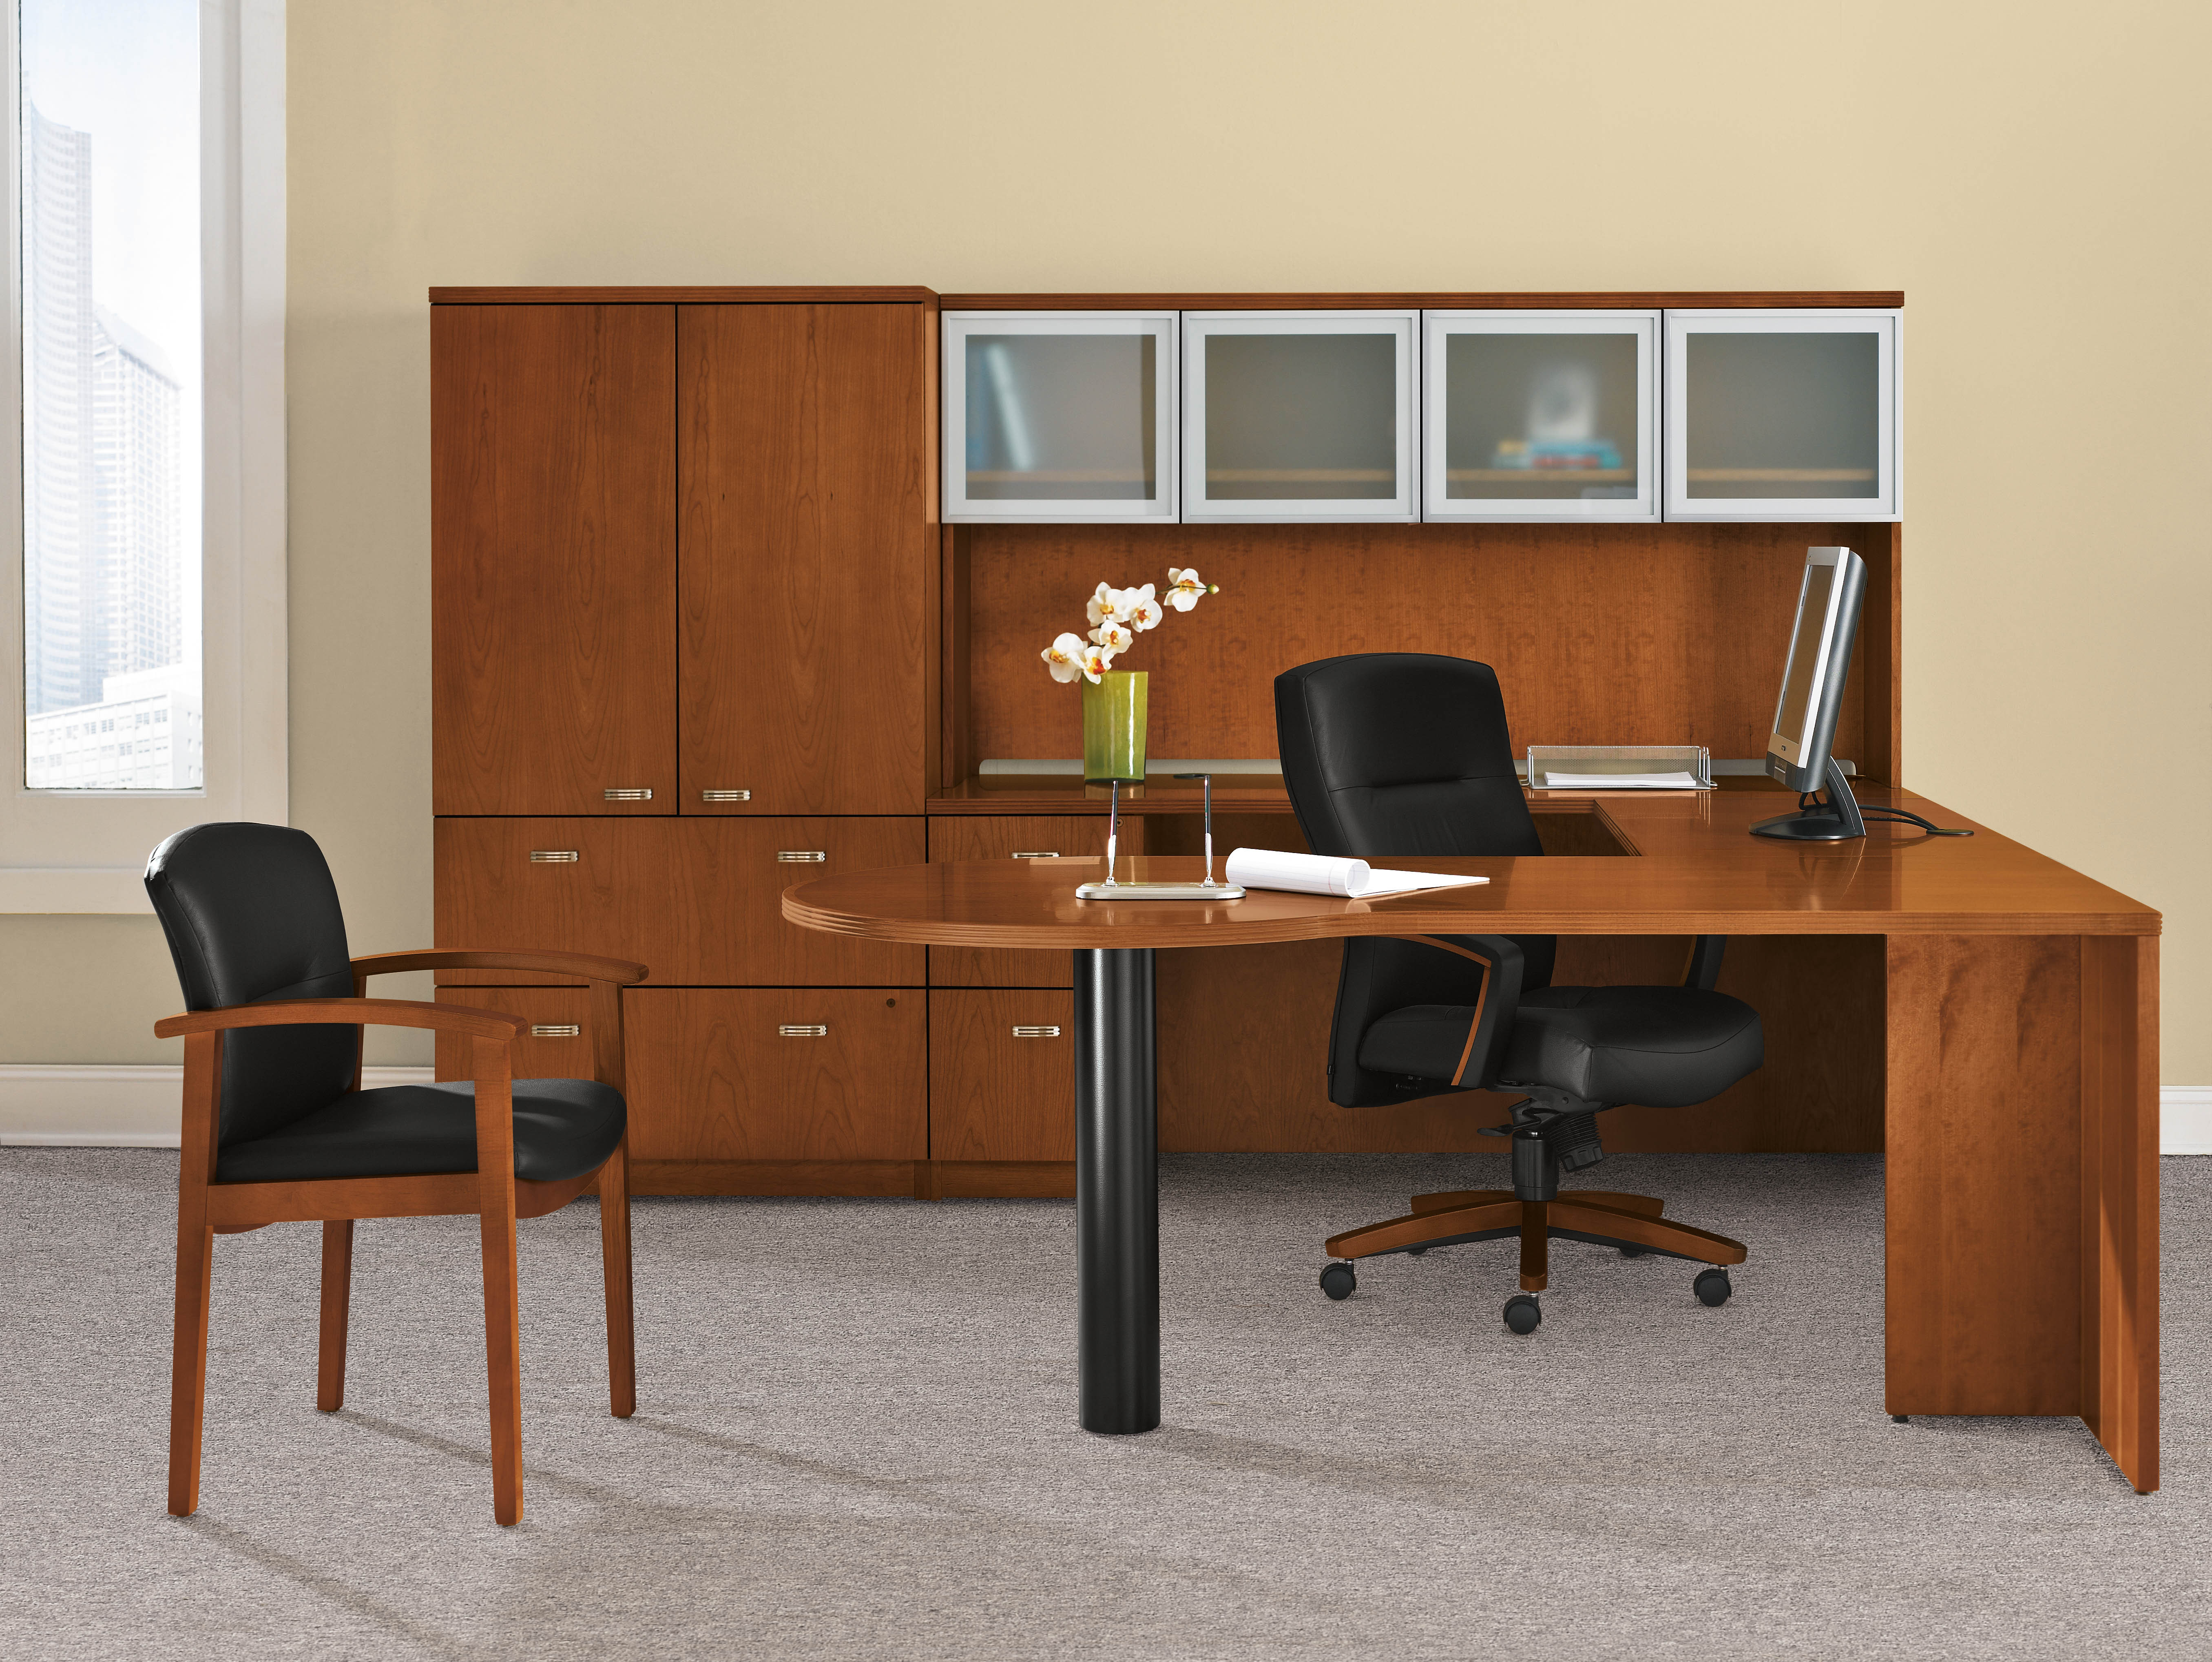 Best ideas about Executive Office Furniture
. Save or Pin Executive Desks Cincinnati Executive fice Furniture Now.